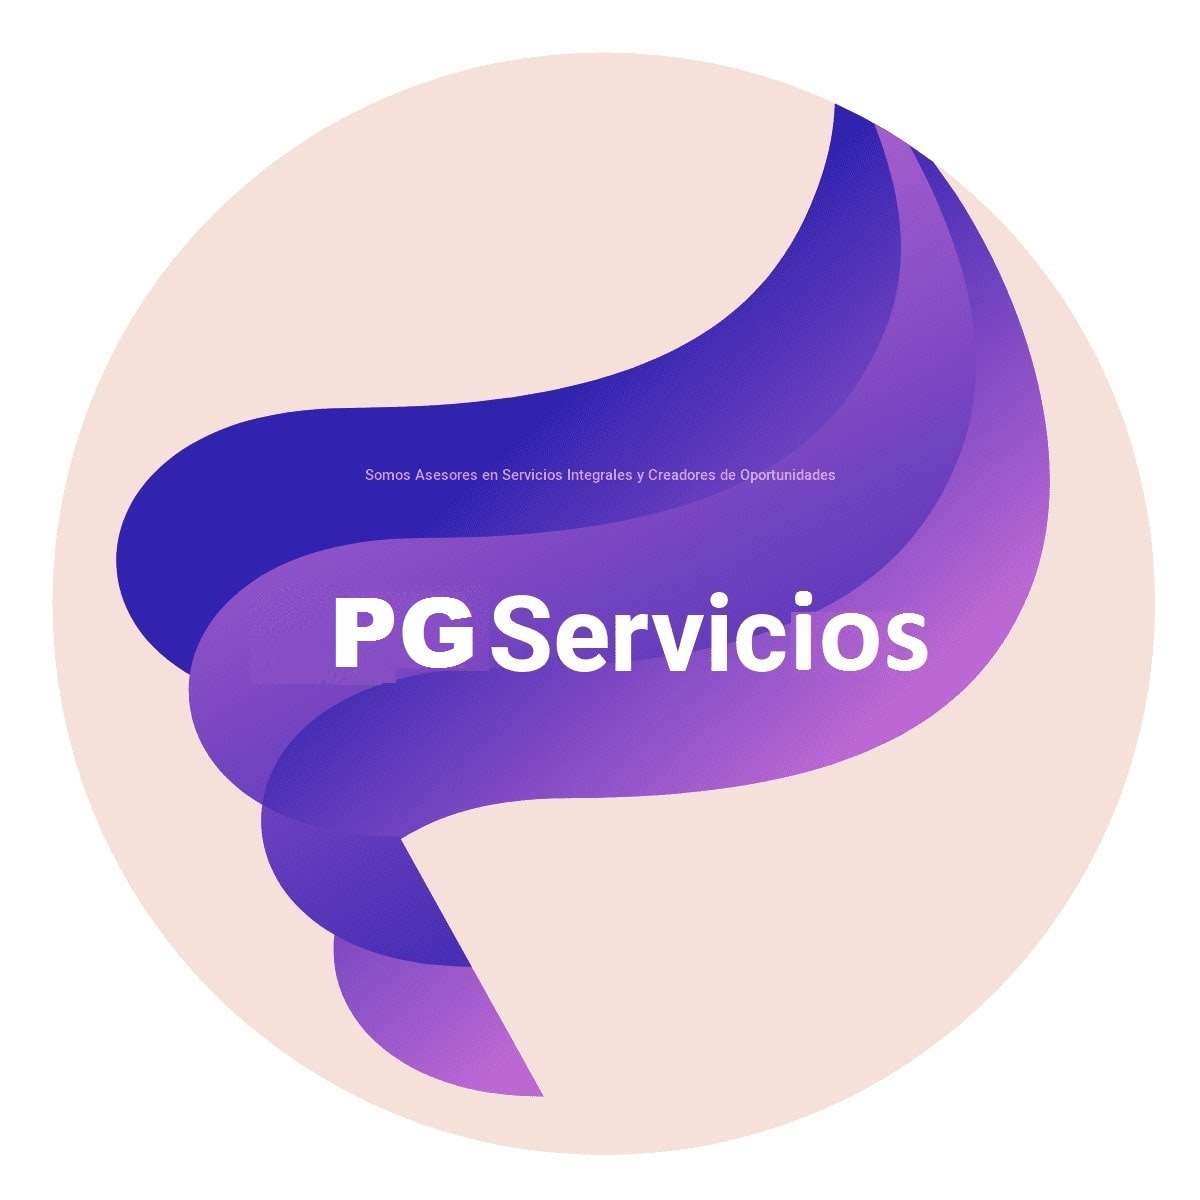 PG Servicios